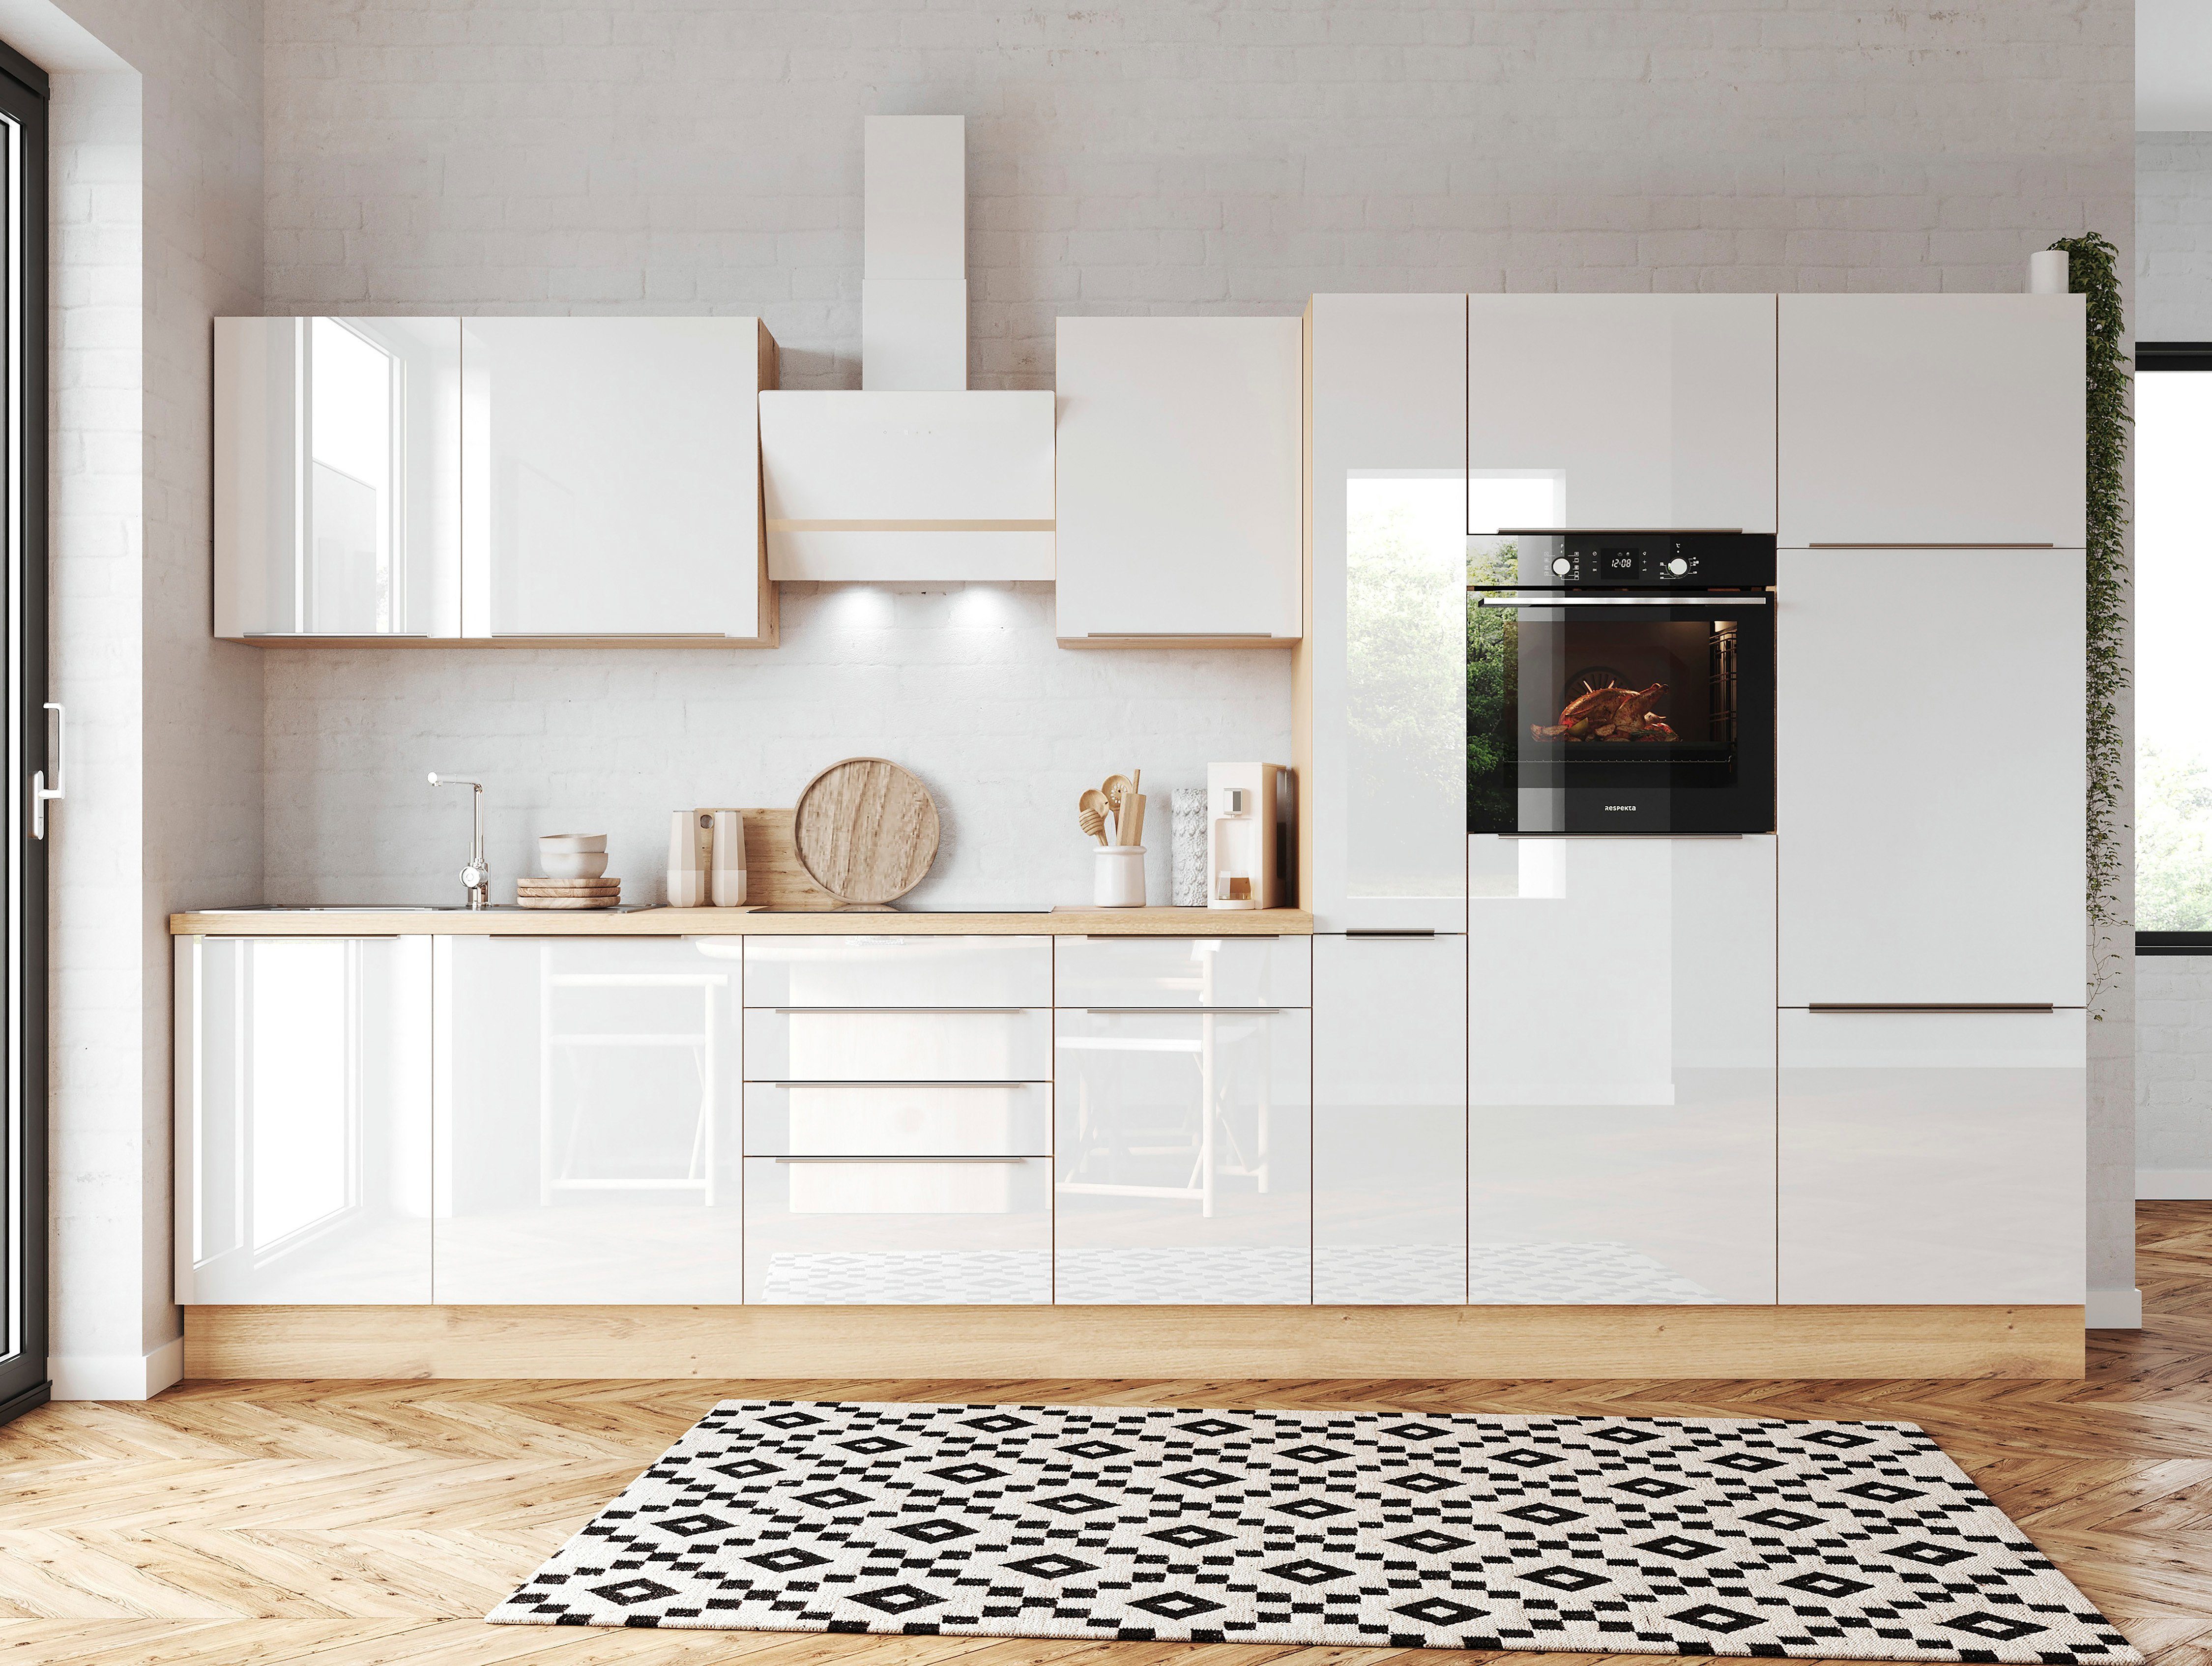 RESPEKTA Küchenzeile Safado aus der Serie Marleen, Breite 370 cm, mit Soft- Close, in exklusiver Konfiguration für OTTO, Alle Scharniere der Türen mit  Soft-Close Funktion